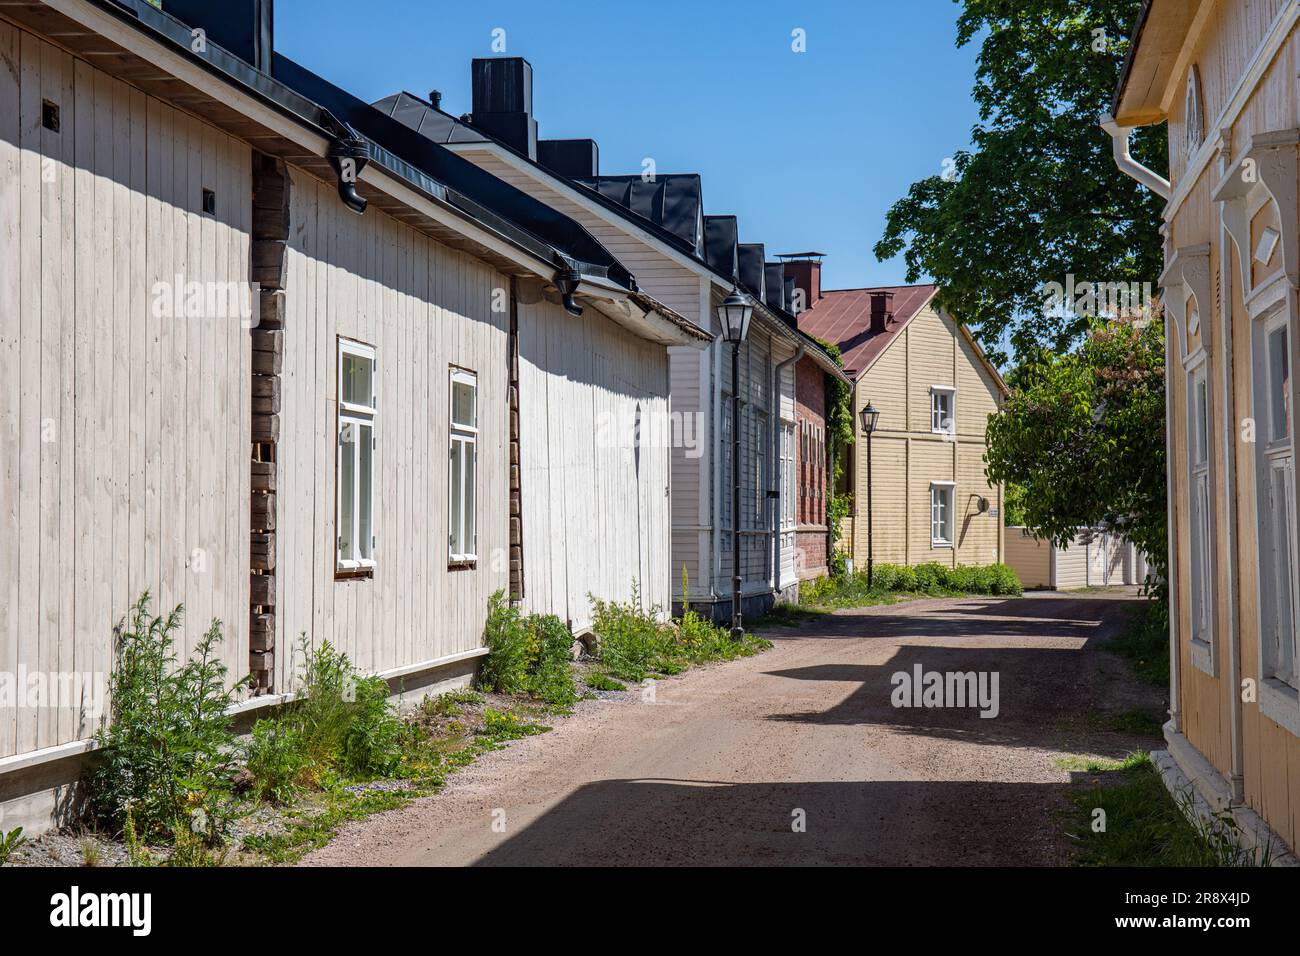 Étroite Eteläinen vue sur Rantakatu ou Södra Strandgatan avec de vieilles maisons en bois à Barckens Udde, la vieille ville de Tammisaari, Finlande Banque D'Images